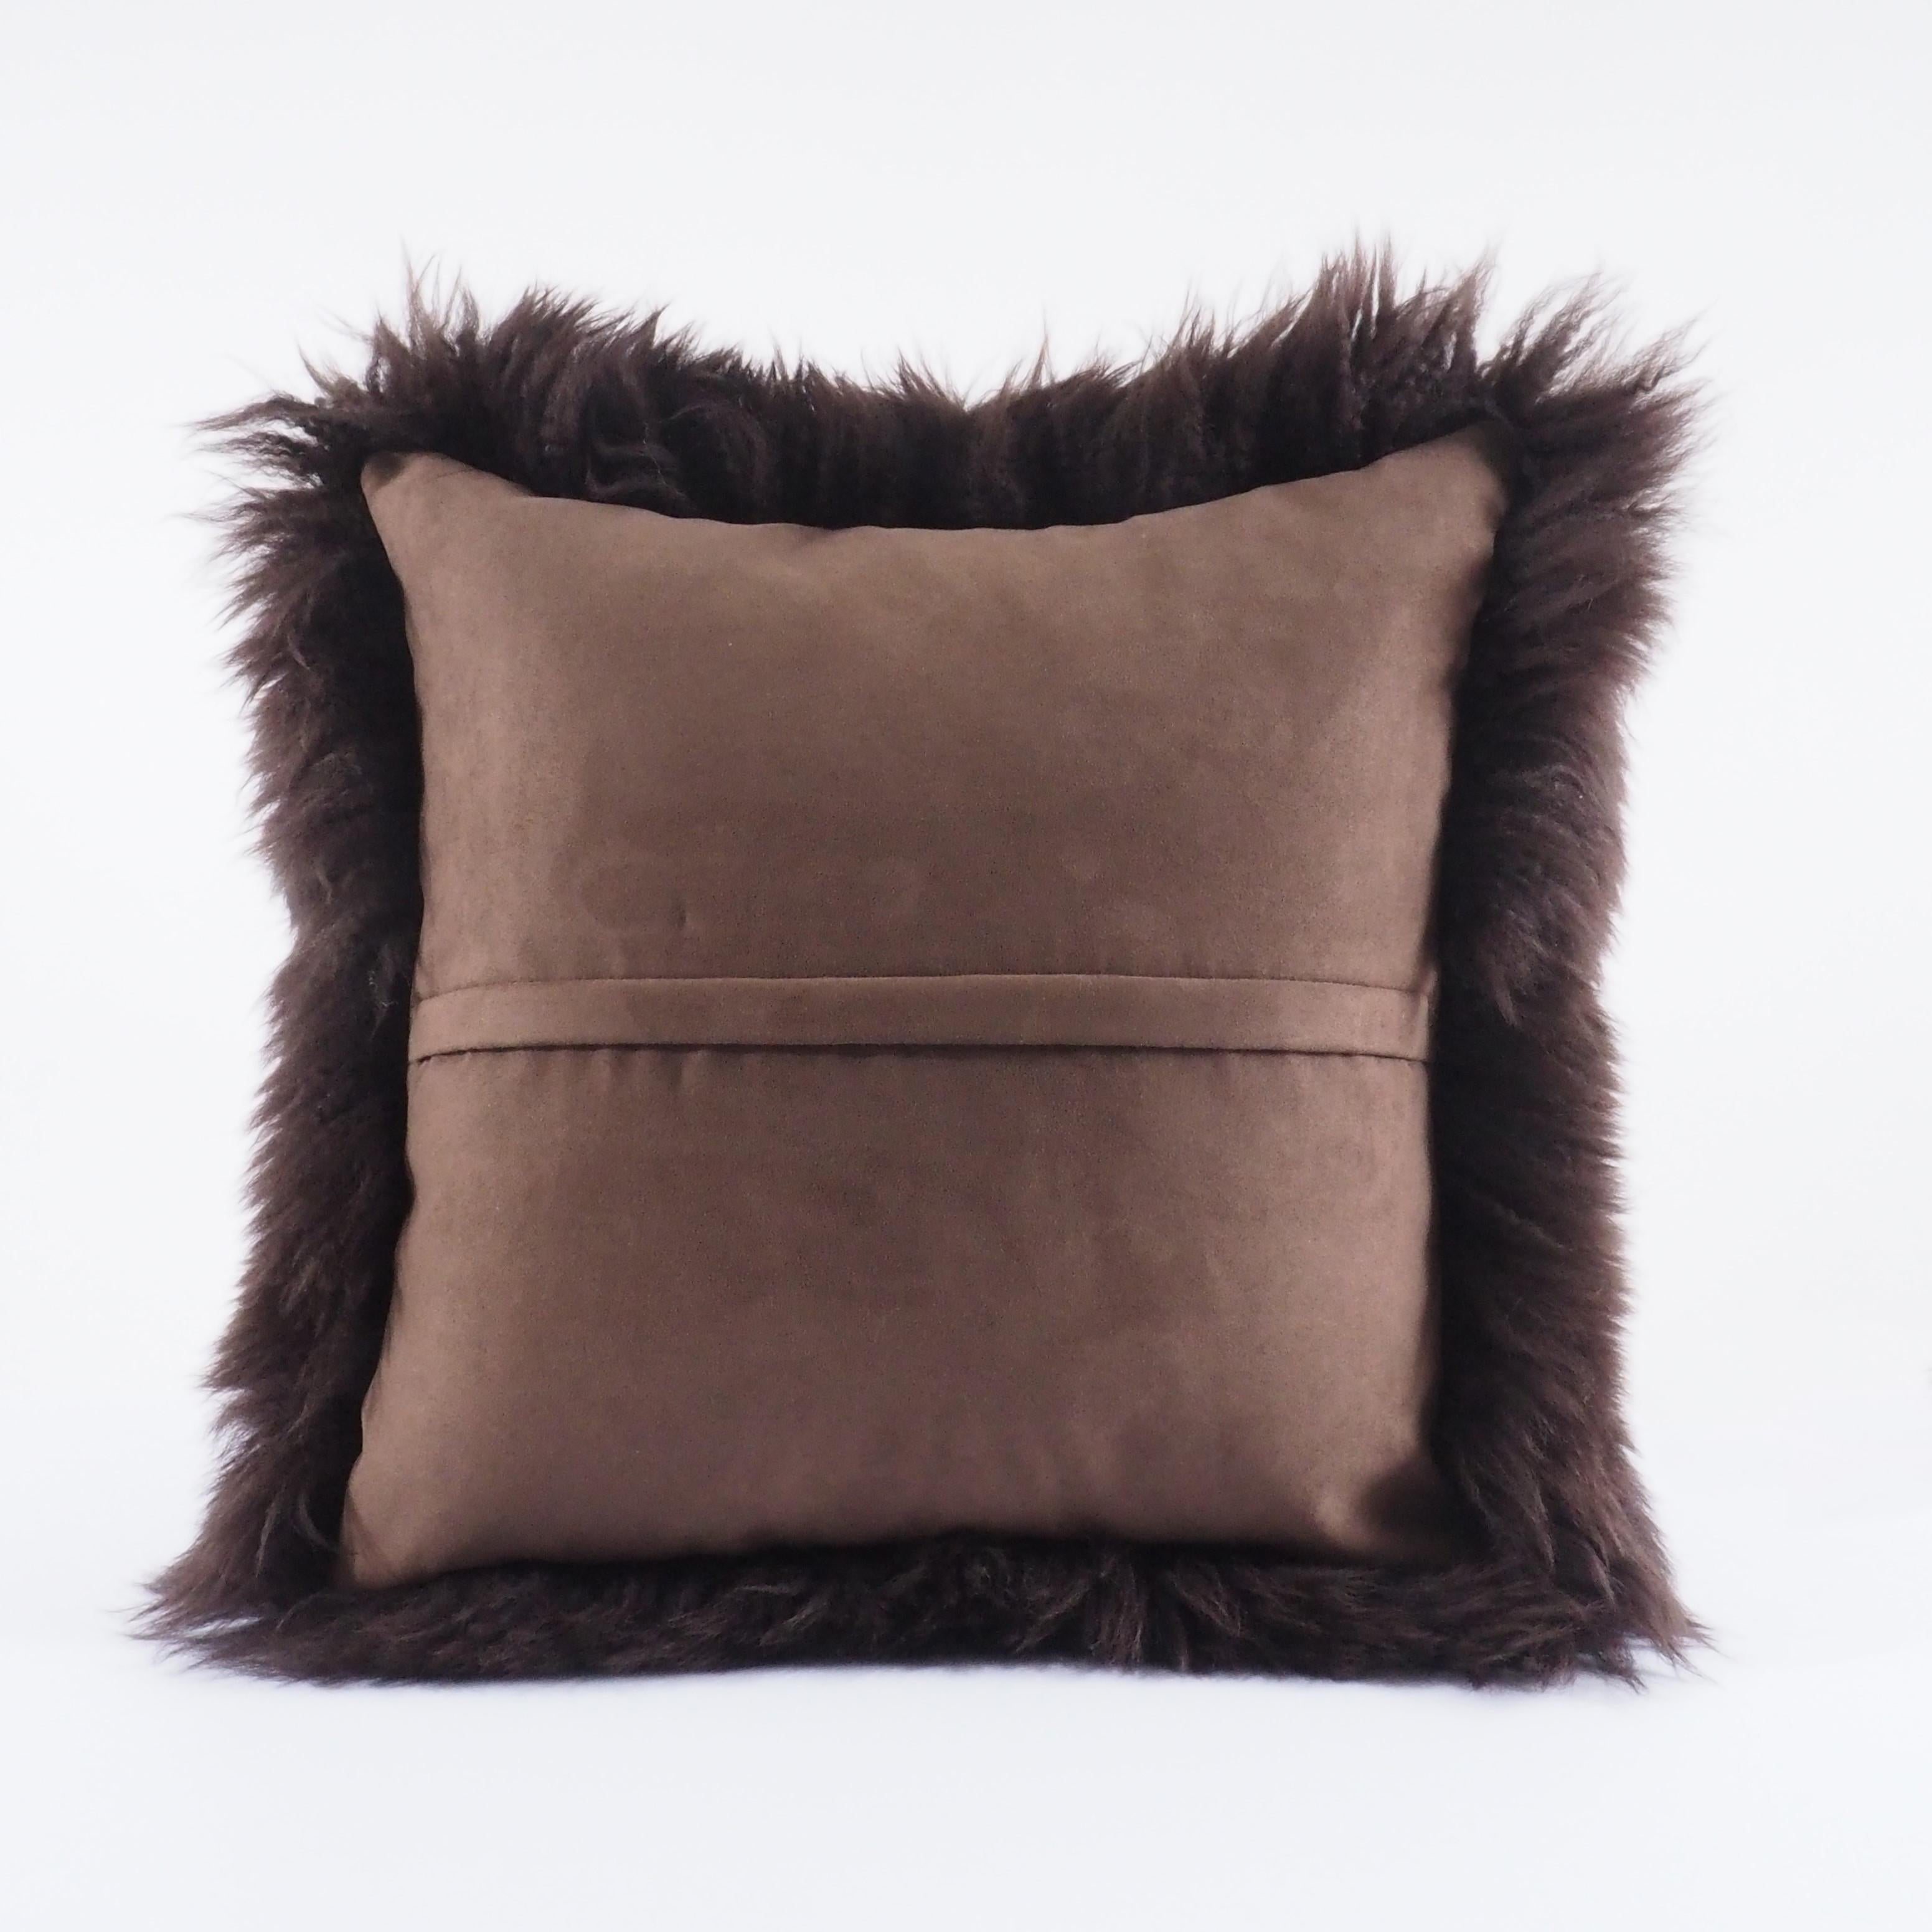 Italian Dark Chocolate Brown Shearling Sheepskin Pillow Fluffy Cushion by Muchi Decor For Sale